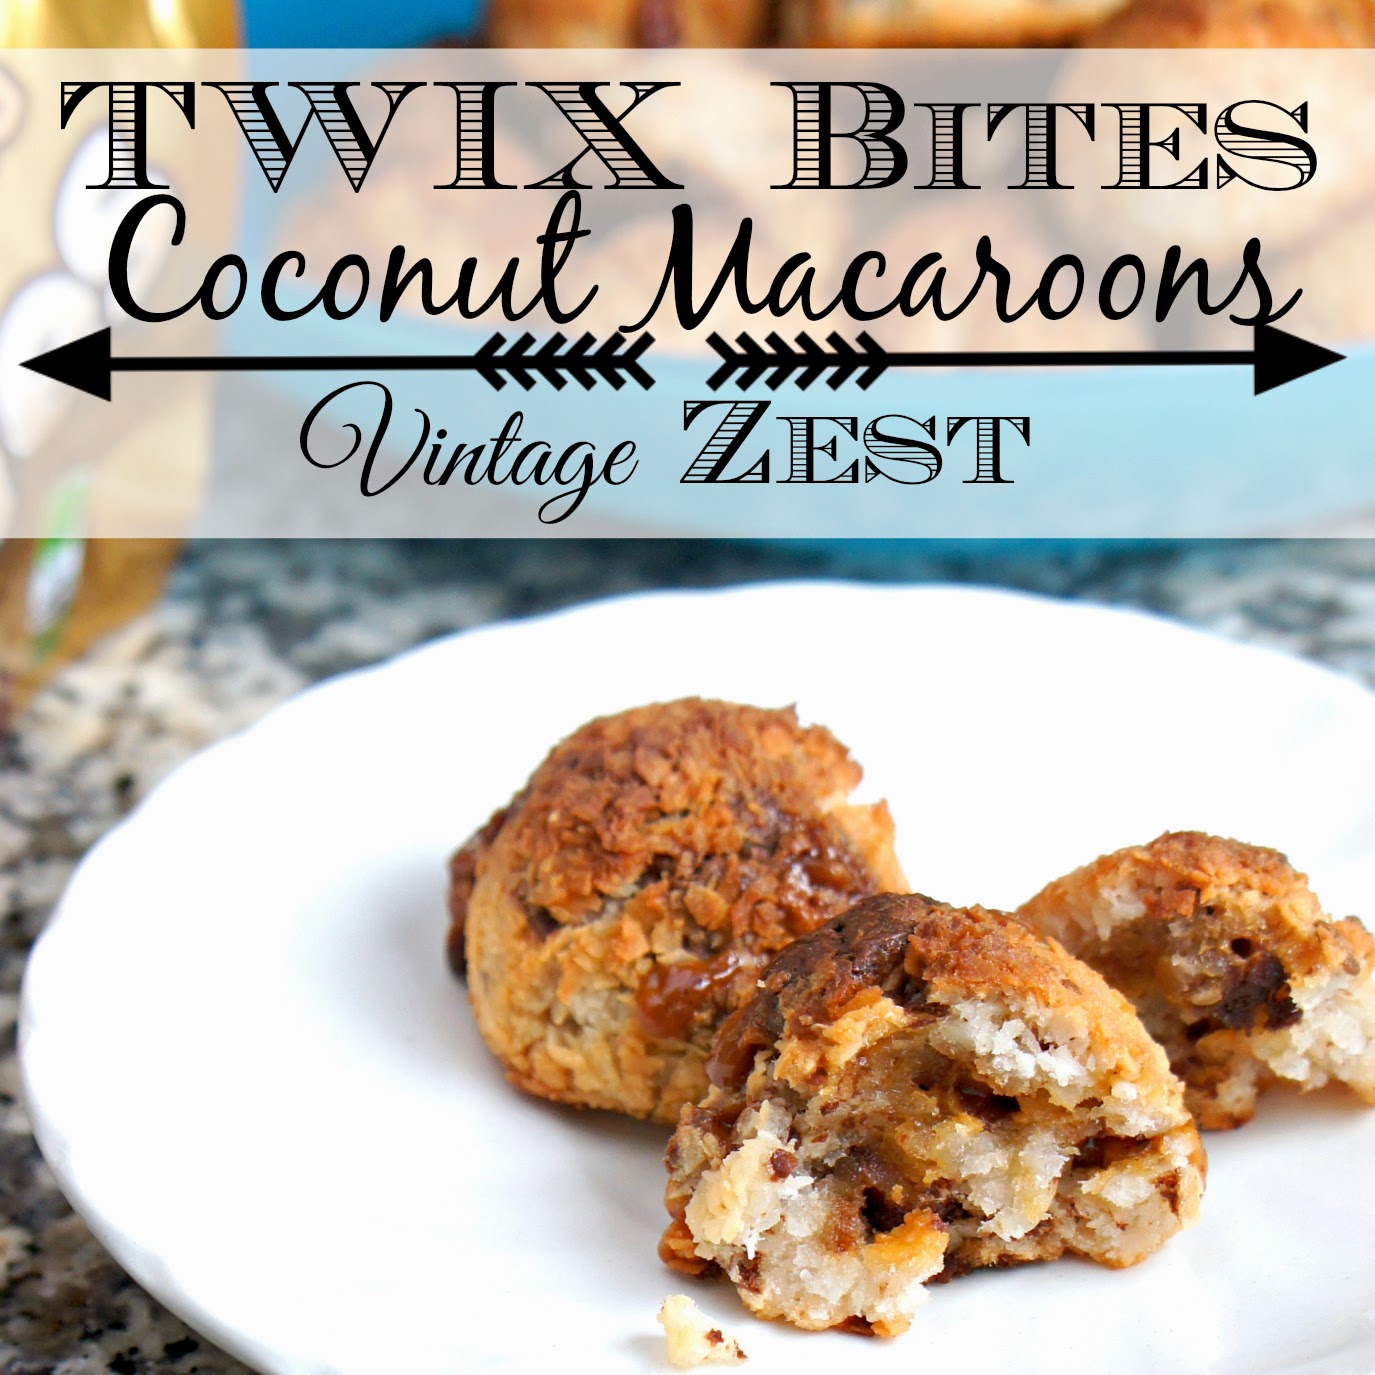 TWIX Bites Coconut Macaroons on Diane's Vintage Zest! #eatmorebites #shop #cbias @vintagezest